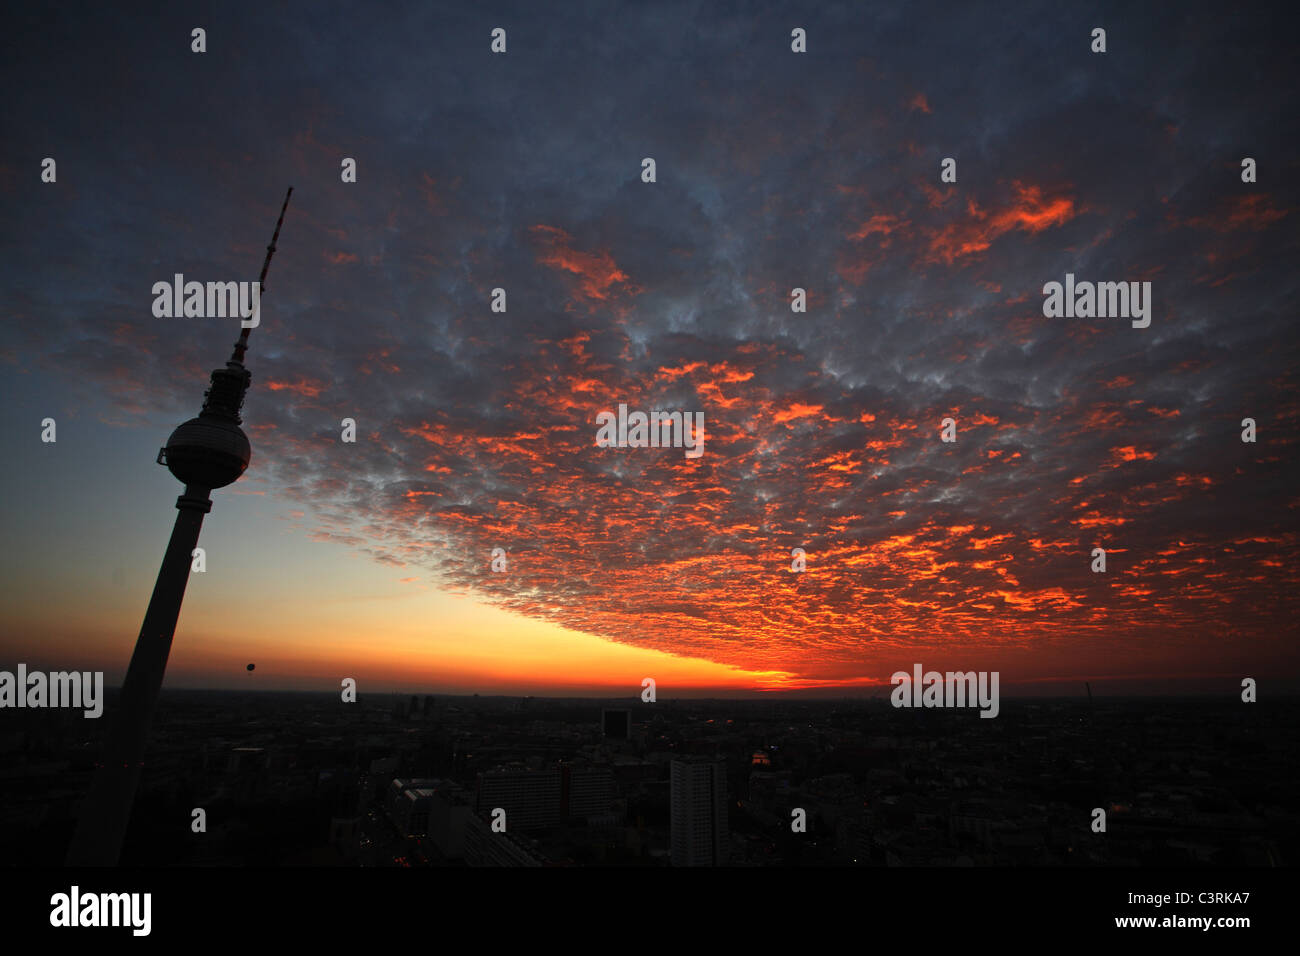 Panorama de la ville, la tour de télévision de l'Alexanderplatz au coucher du soleil, Berlin, Allemagne Banque D'Images